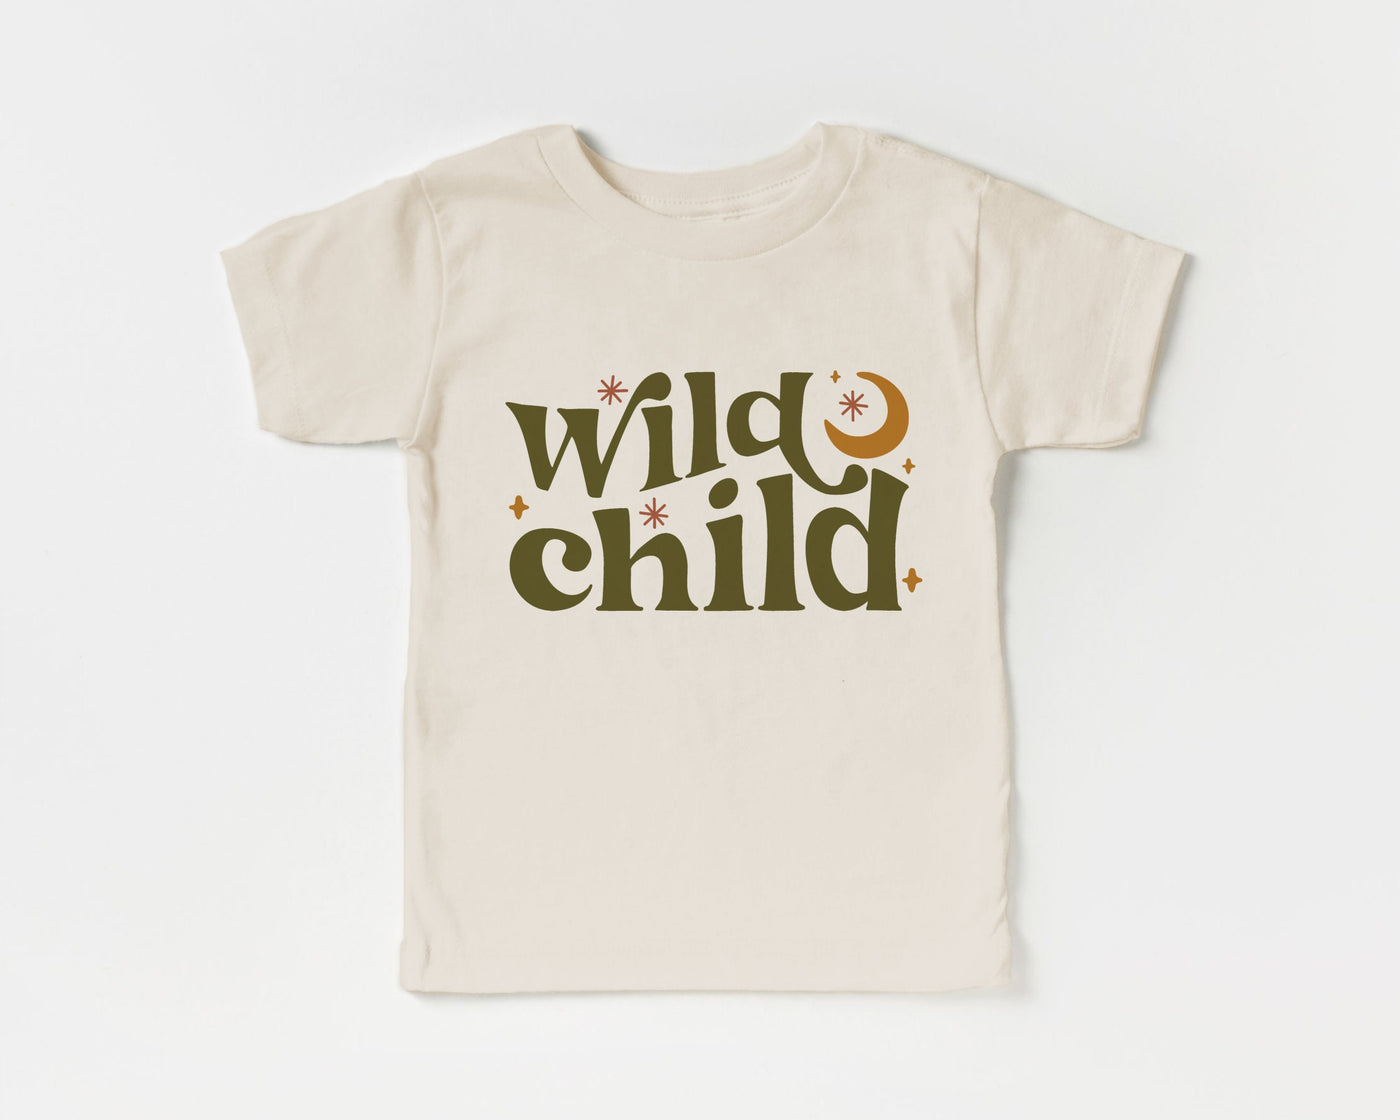 Wild Child Shirt, Hippie Kid Shirt, Retro Toddler Shirt, Wild Child Tee, Cute Hippie Toddler Shirt, Boho Toddler Shirt, Wild Child Kid Shirt